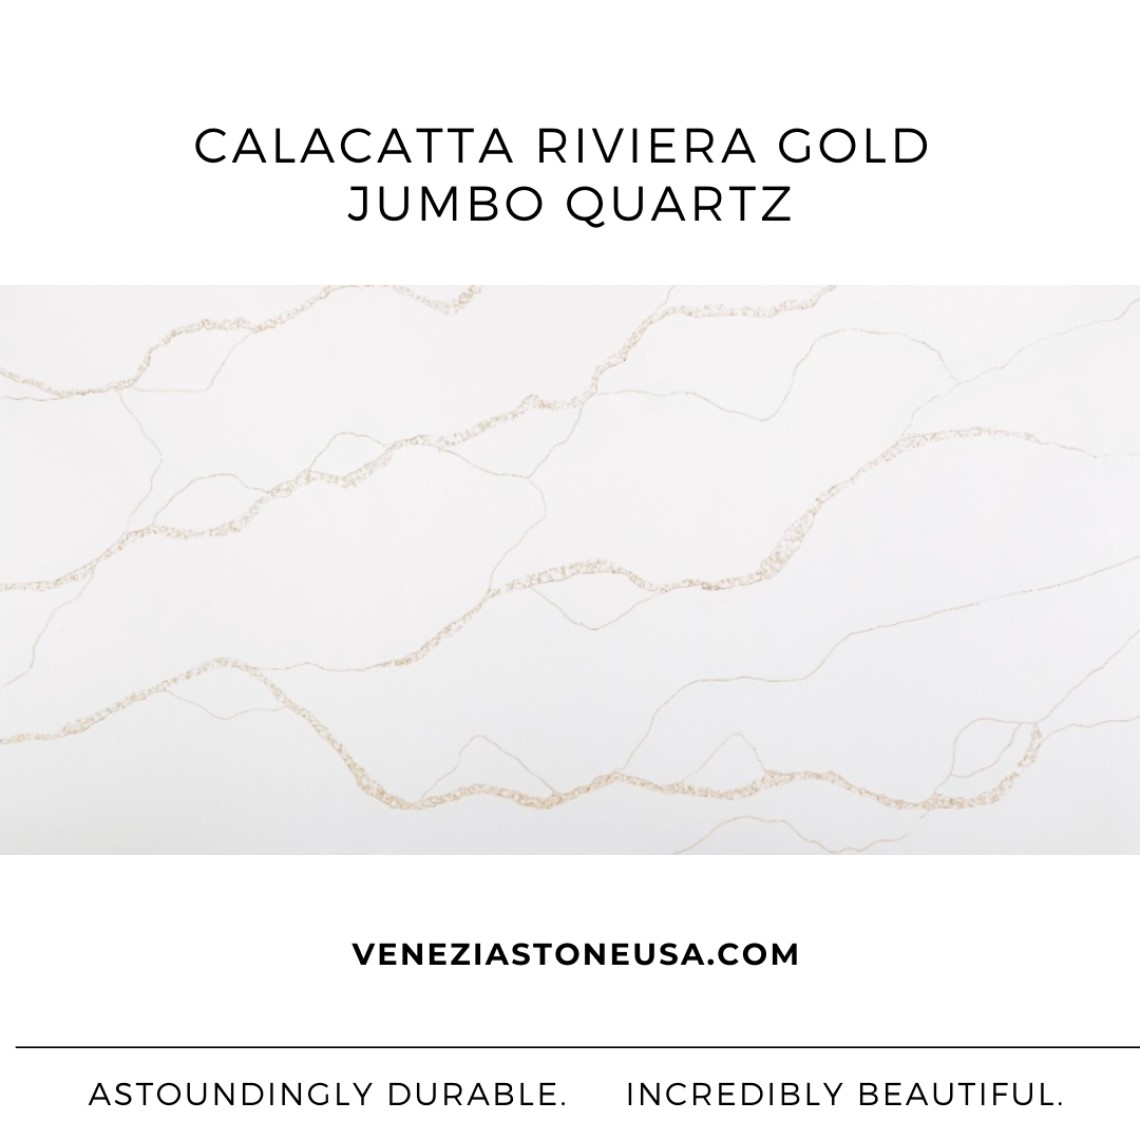 Calacatta Riviera Gold Jumbo Quartz